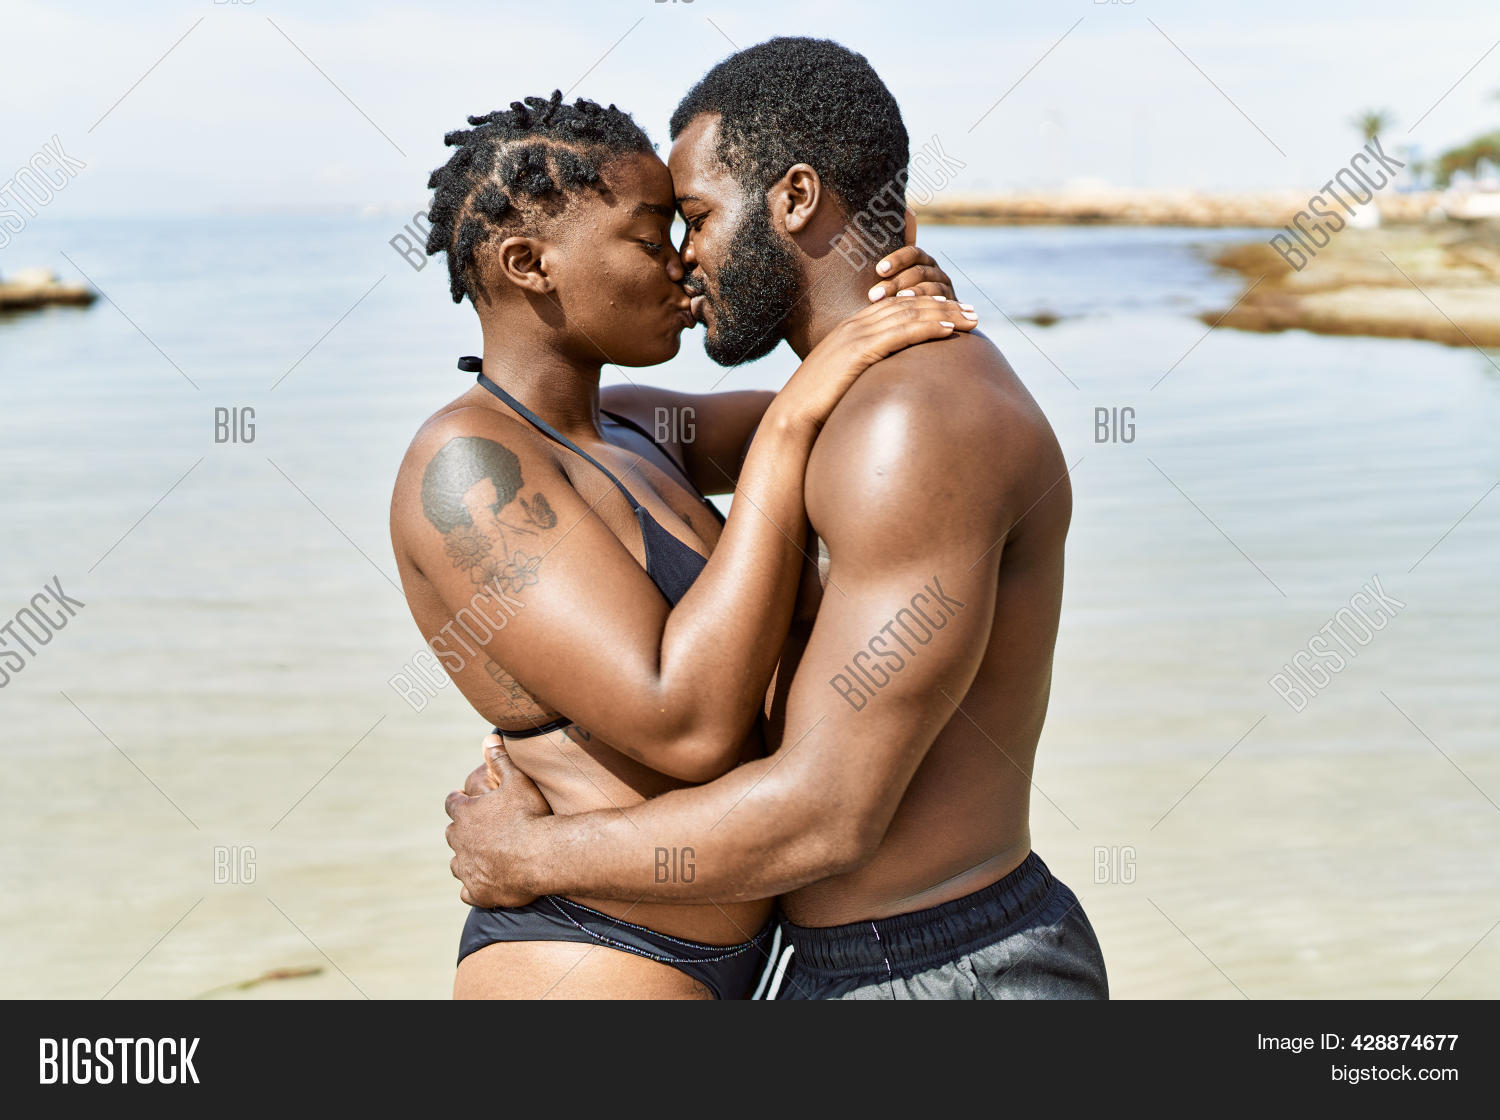 allan cadiz share kissing on the beach photos